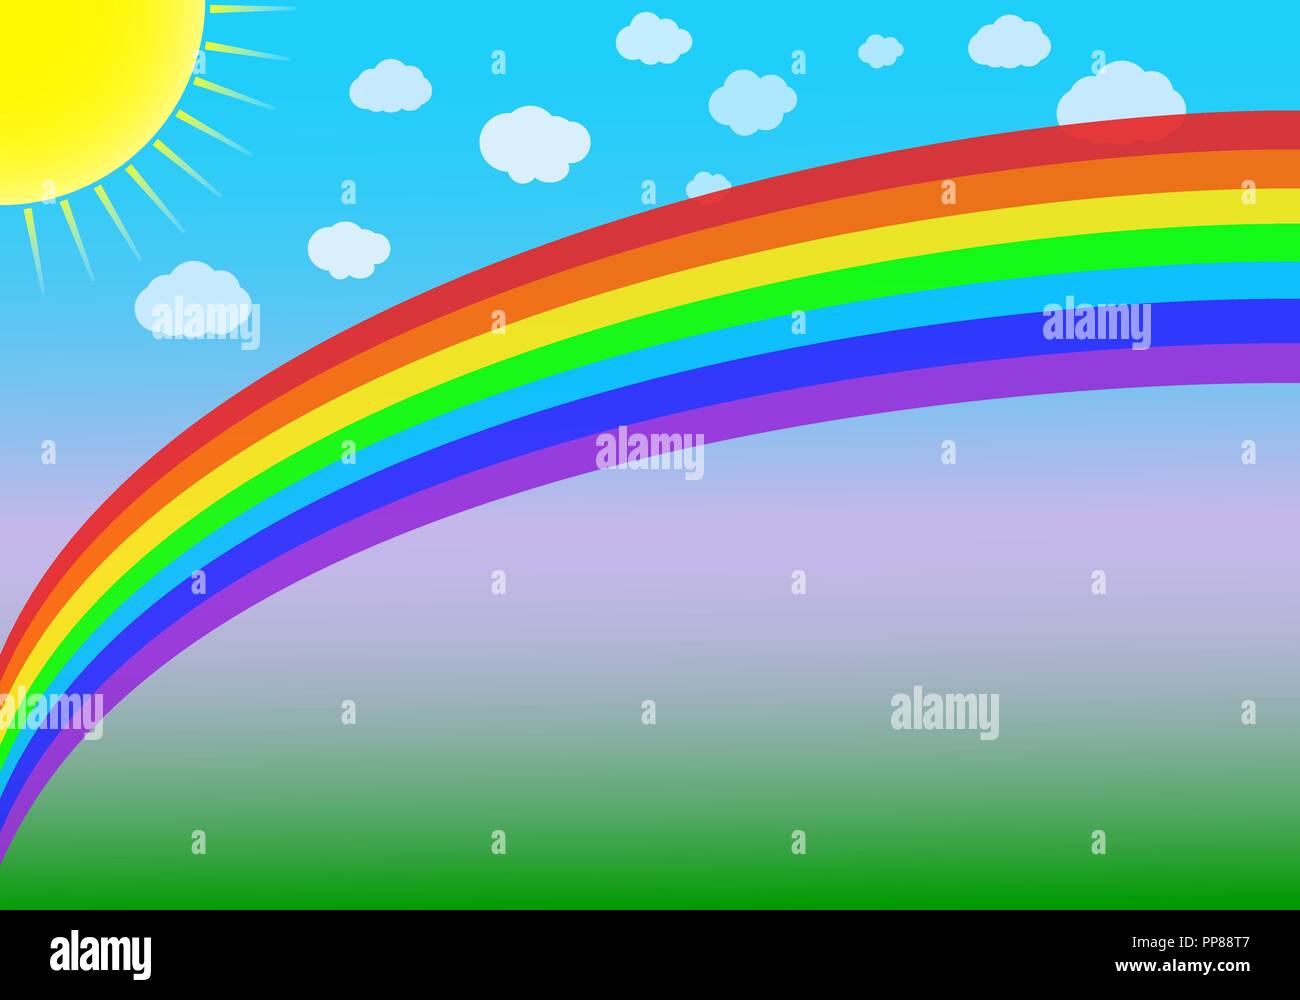 Illustrazione vettoriale di un arcobaleno, sole e nuvole su un blu-verde dello sfondo. Illustrazione Vettoriale